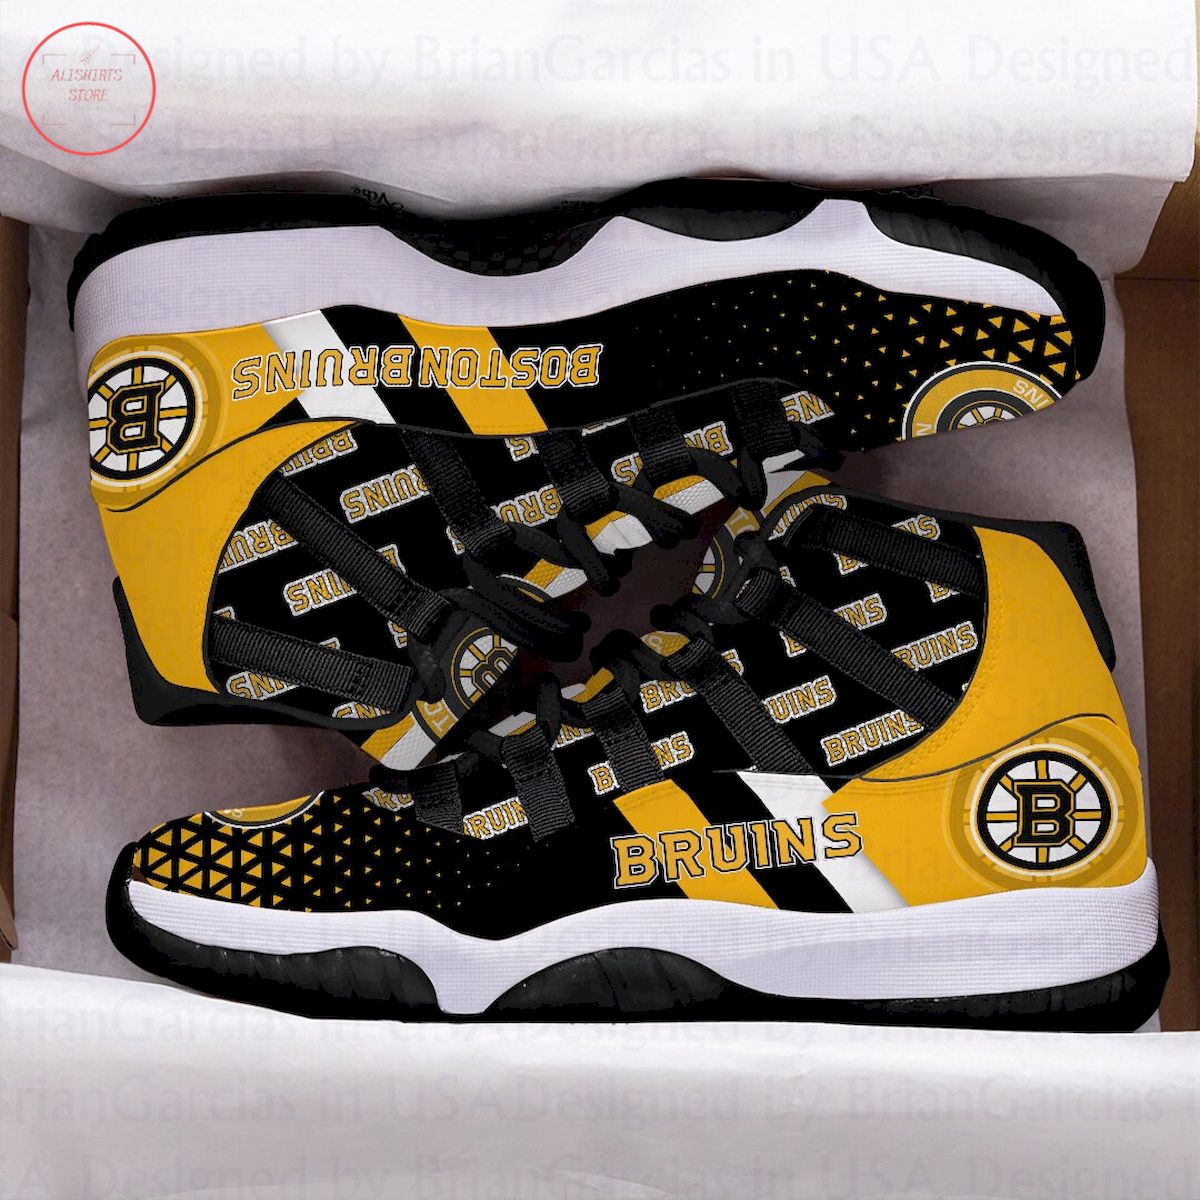 Boston Bruins Air Jordan 11 Sneakers